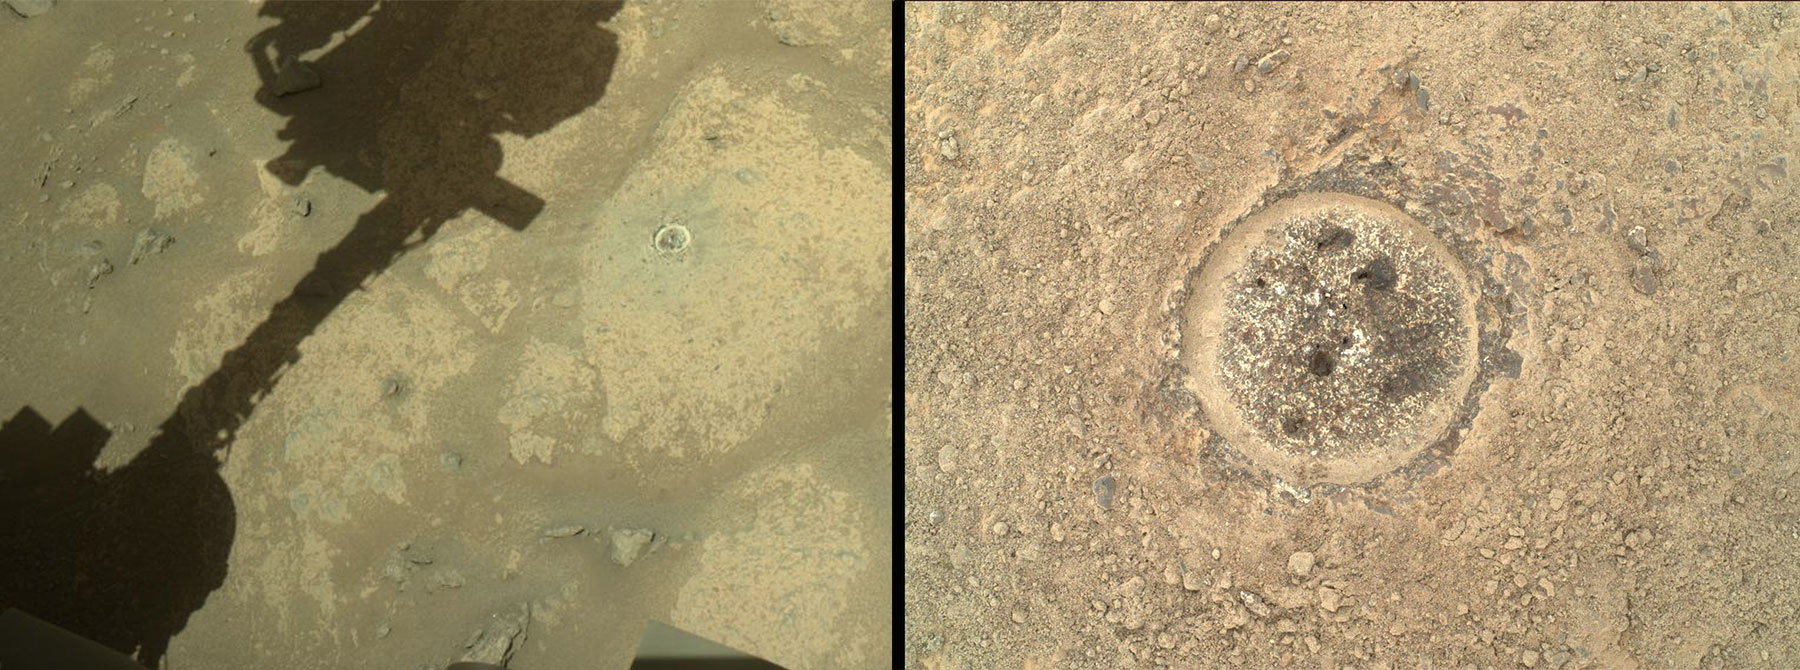 Как песок сквозь пальцы: НАСА удалось объяснить неудачную попытку Perseverance взять первую пробу грунта Марса - 3